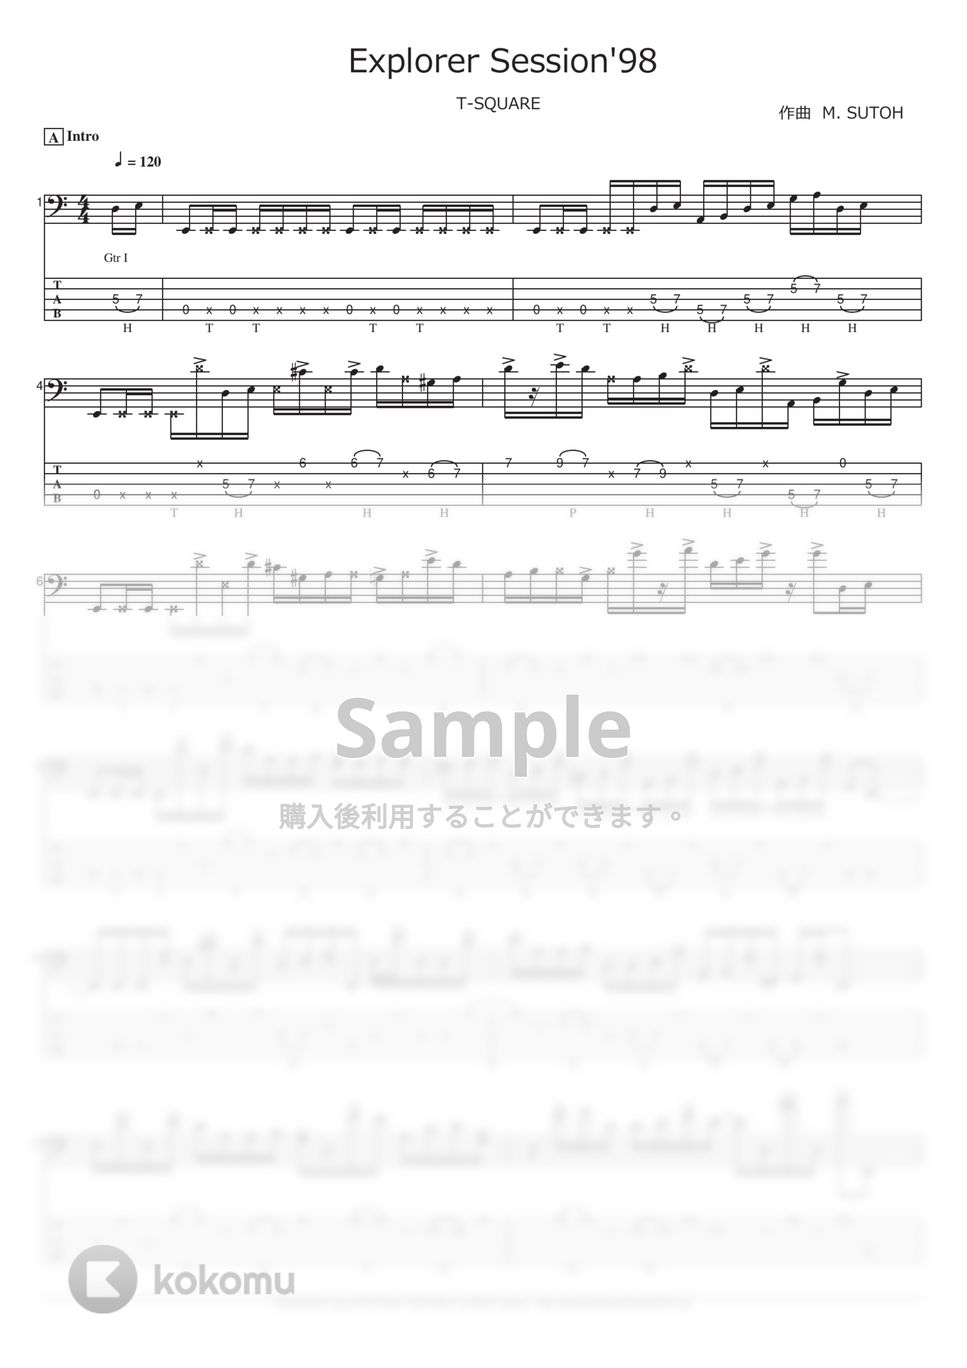 T-SQUARE - Explorer (ベース Tab譜 5弦) by T's bass score